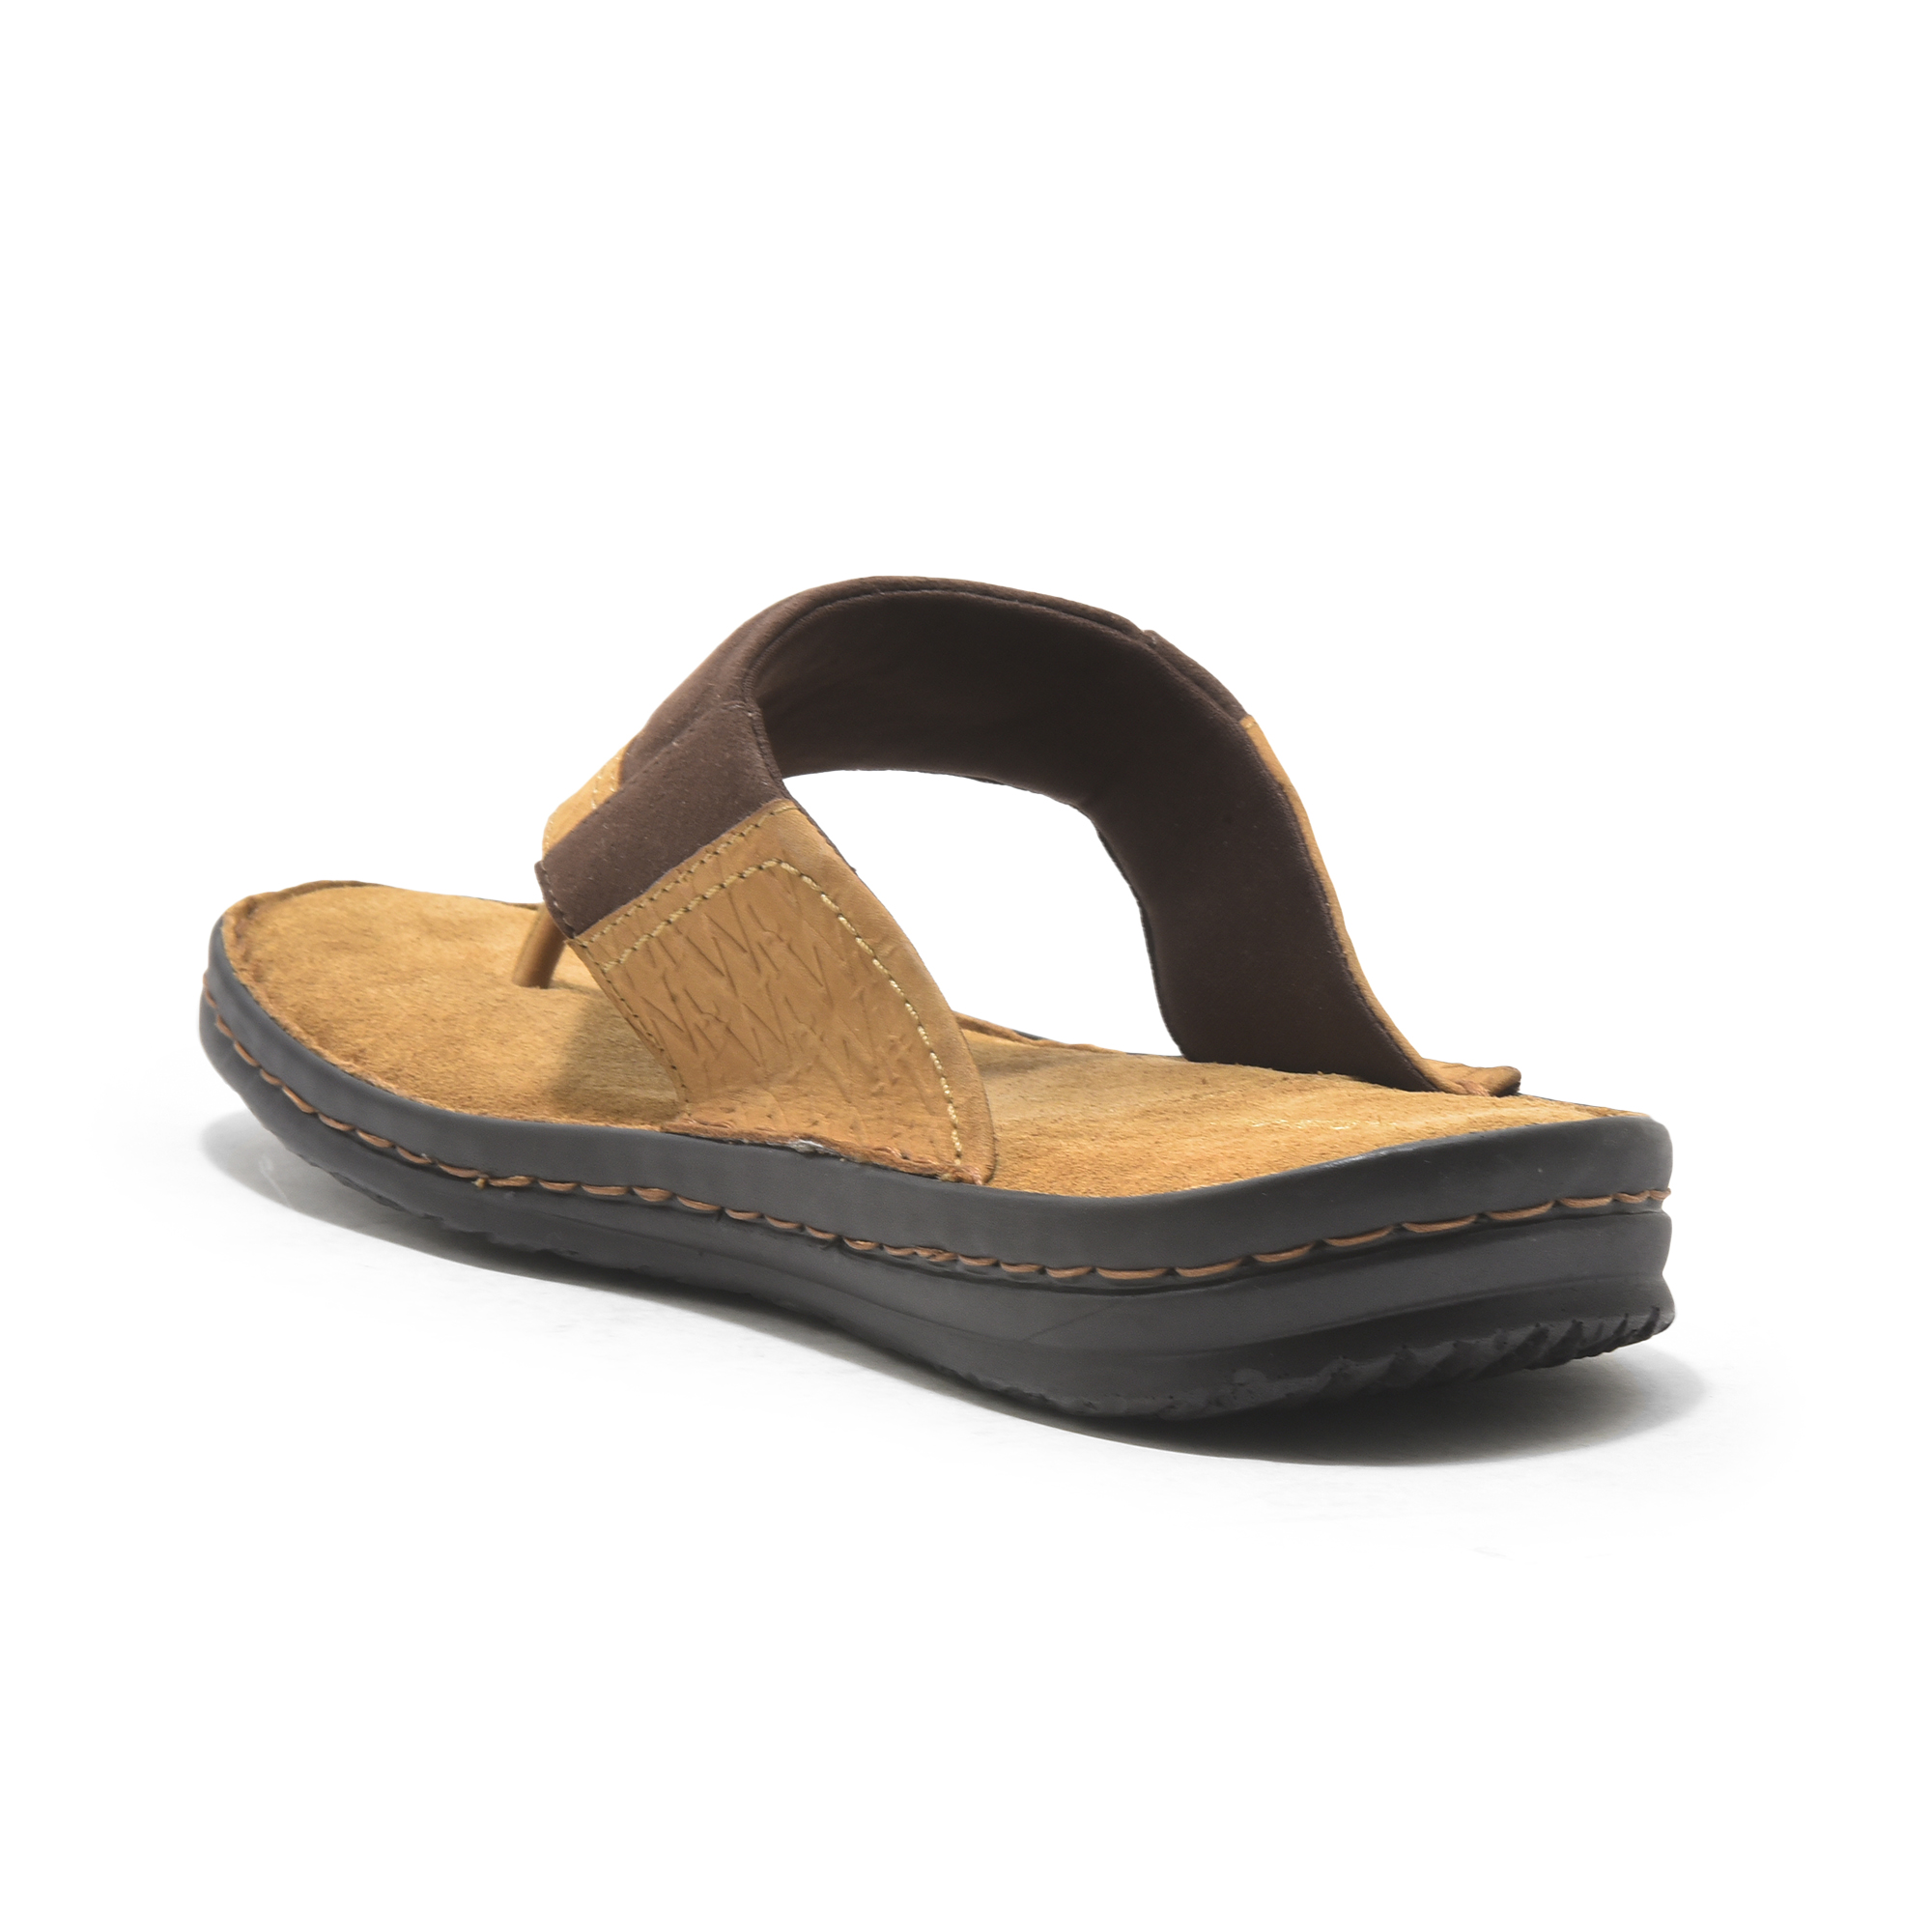 Camel Leather slipper for men